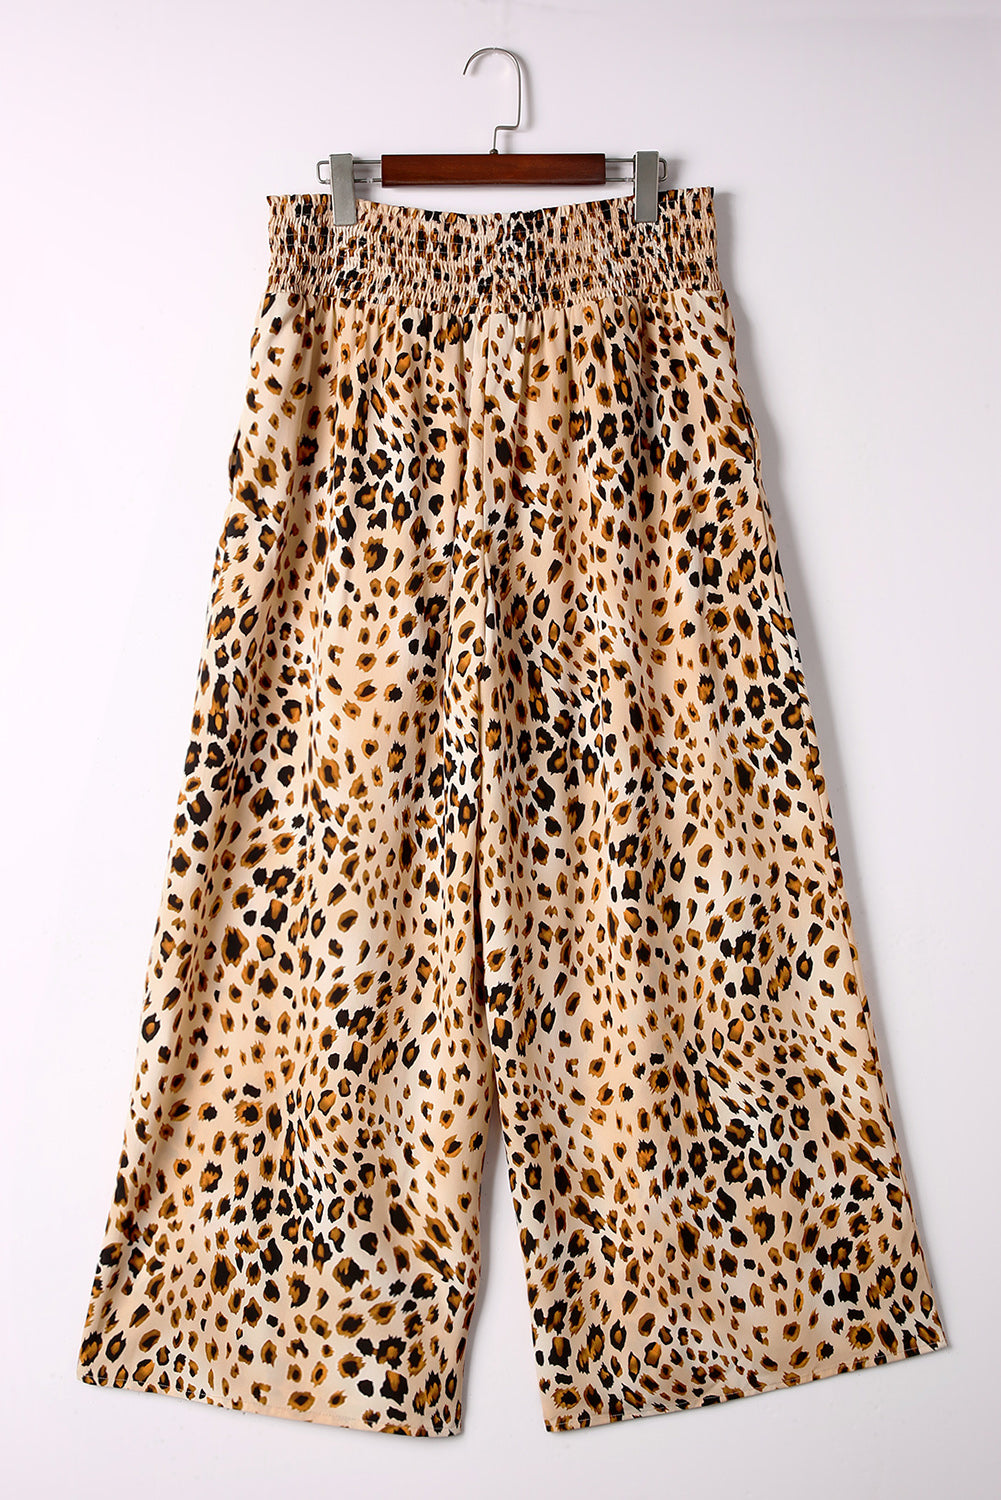 Dimljene hlače sa širokim nogavicama visokog struka u obliku leoparda velike veličine